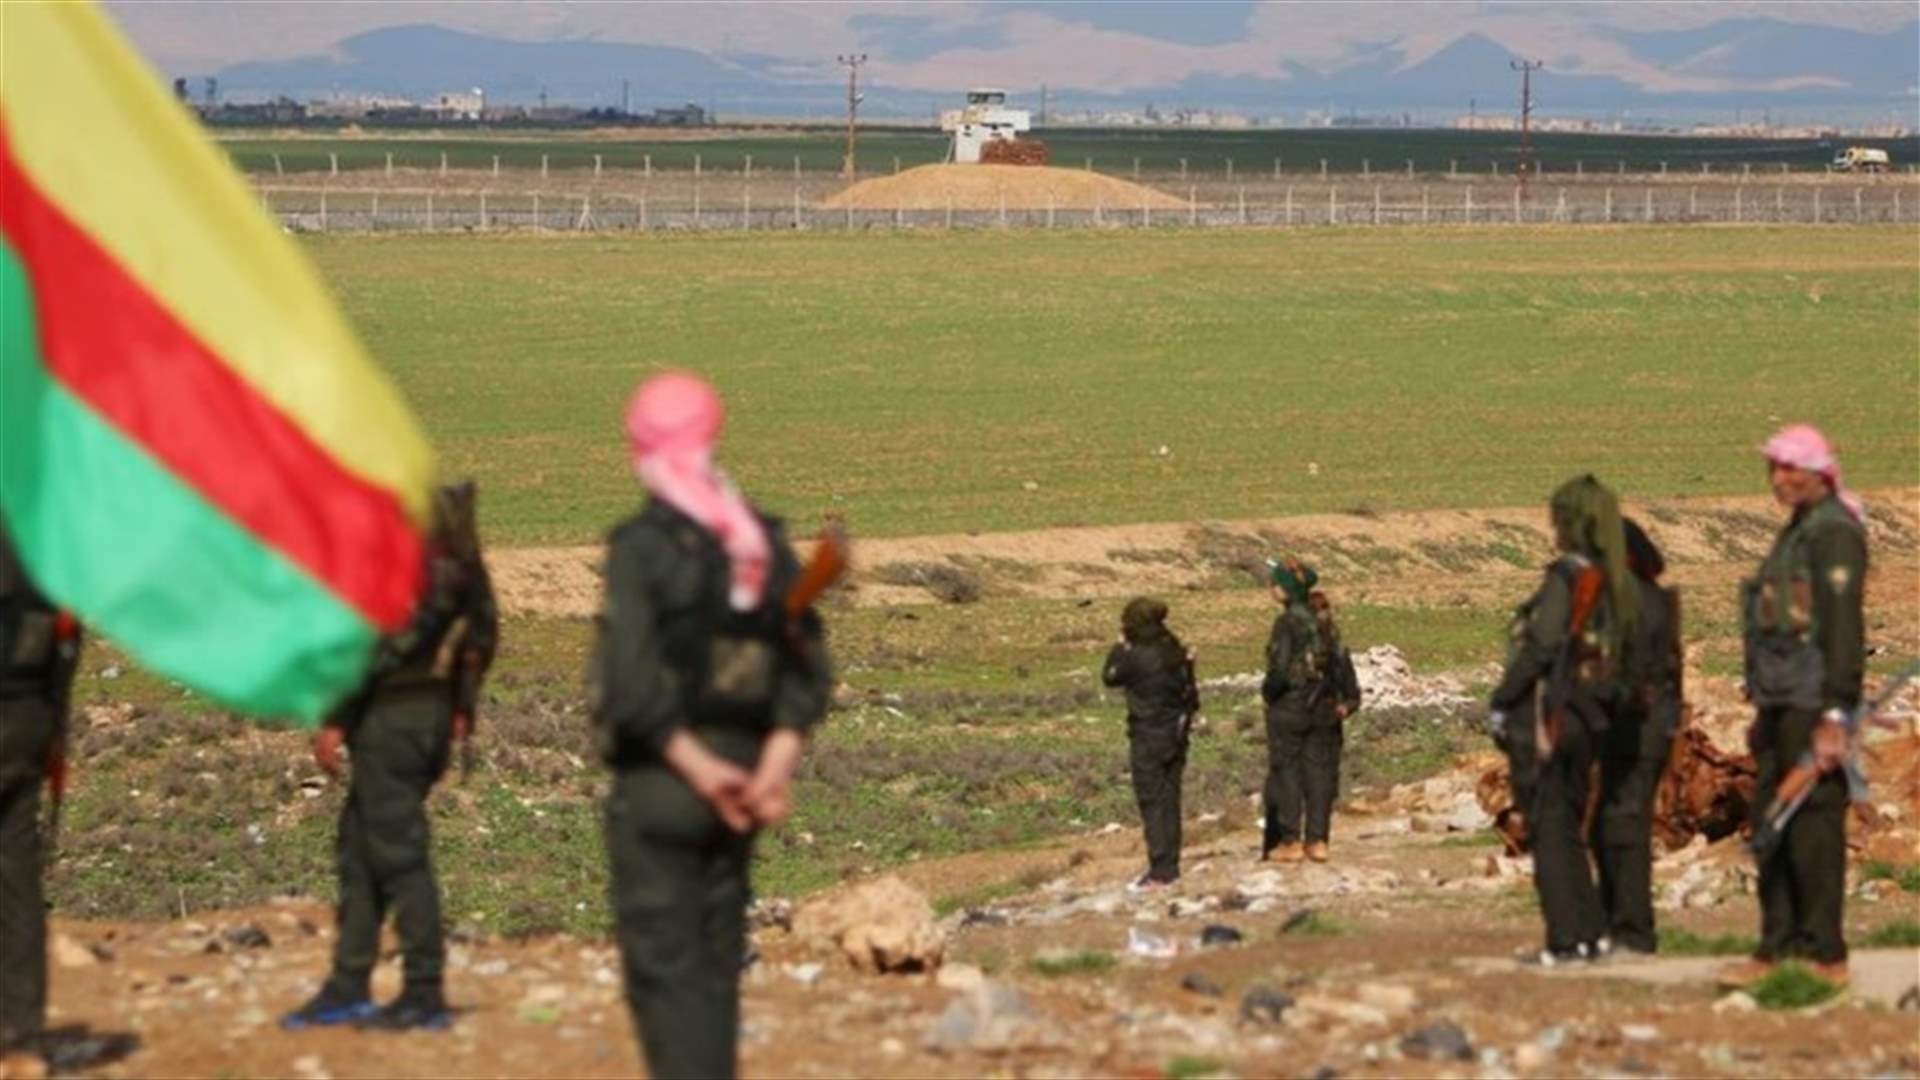 واشنطن تعبر عن قلقها بعد قصف الجيش التركي مواقع المسلحين الاكراد في سوريا